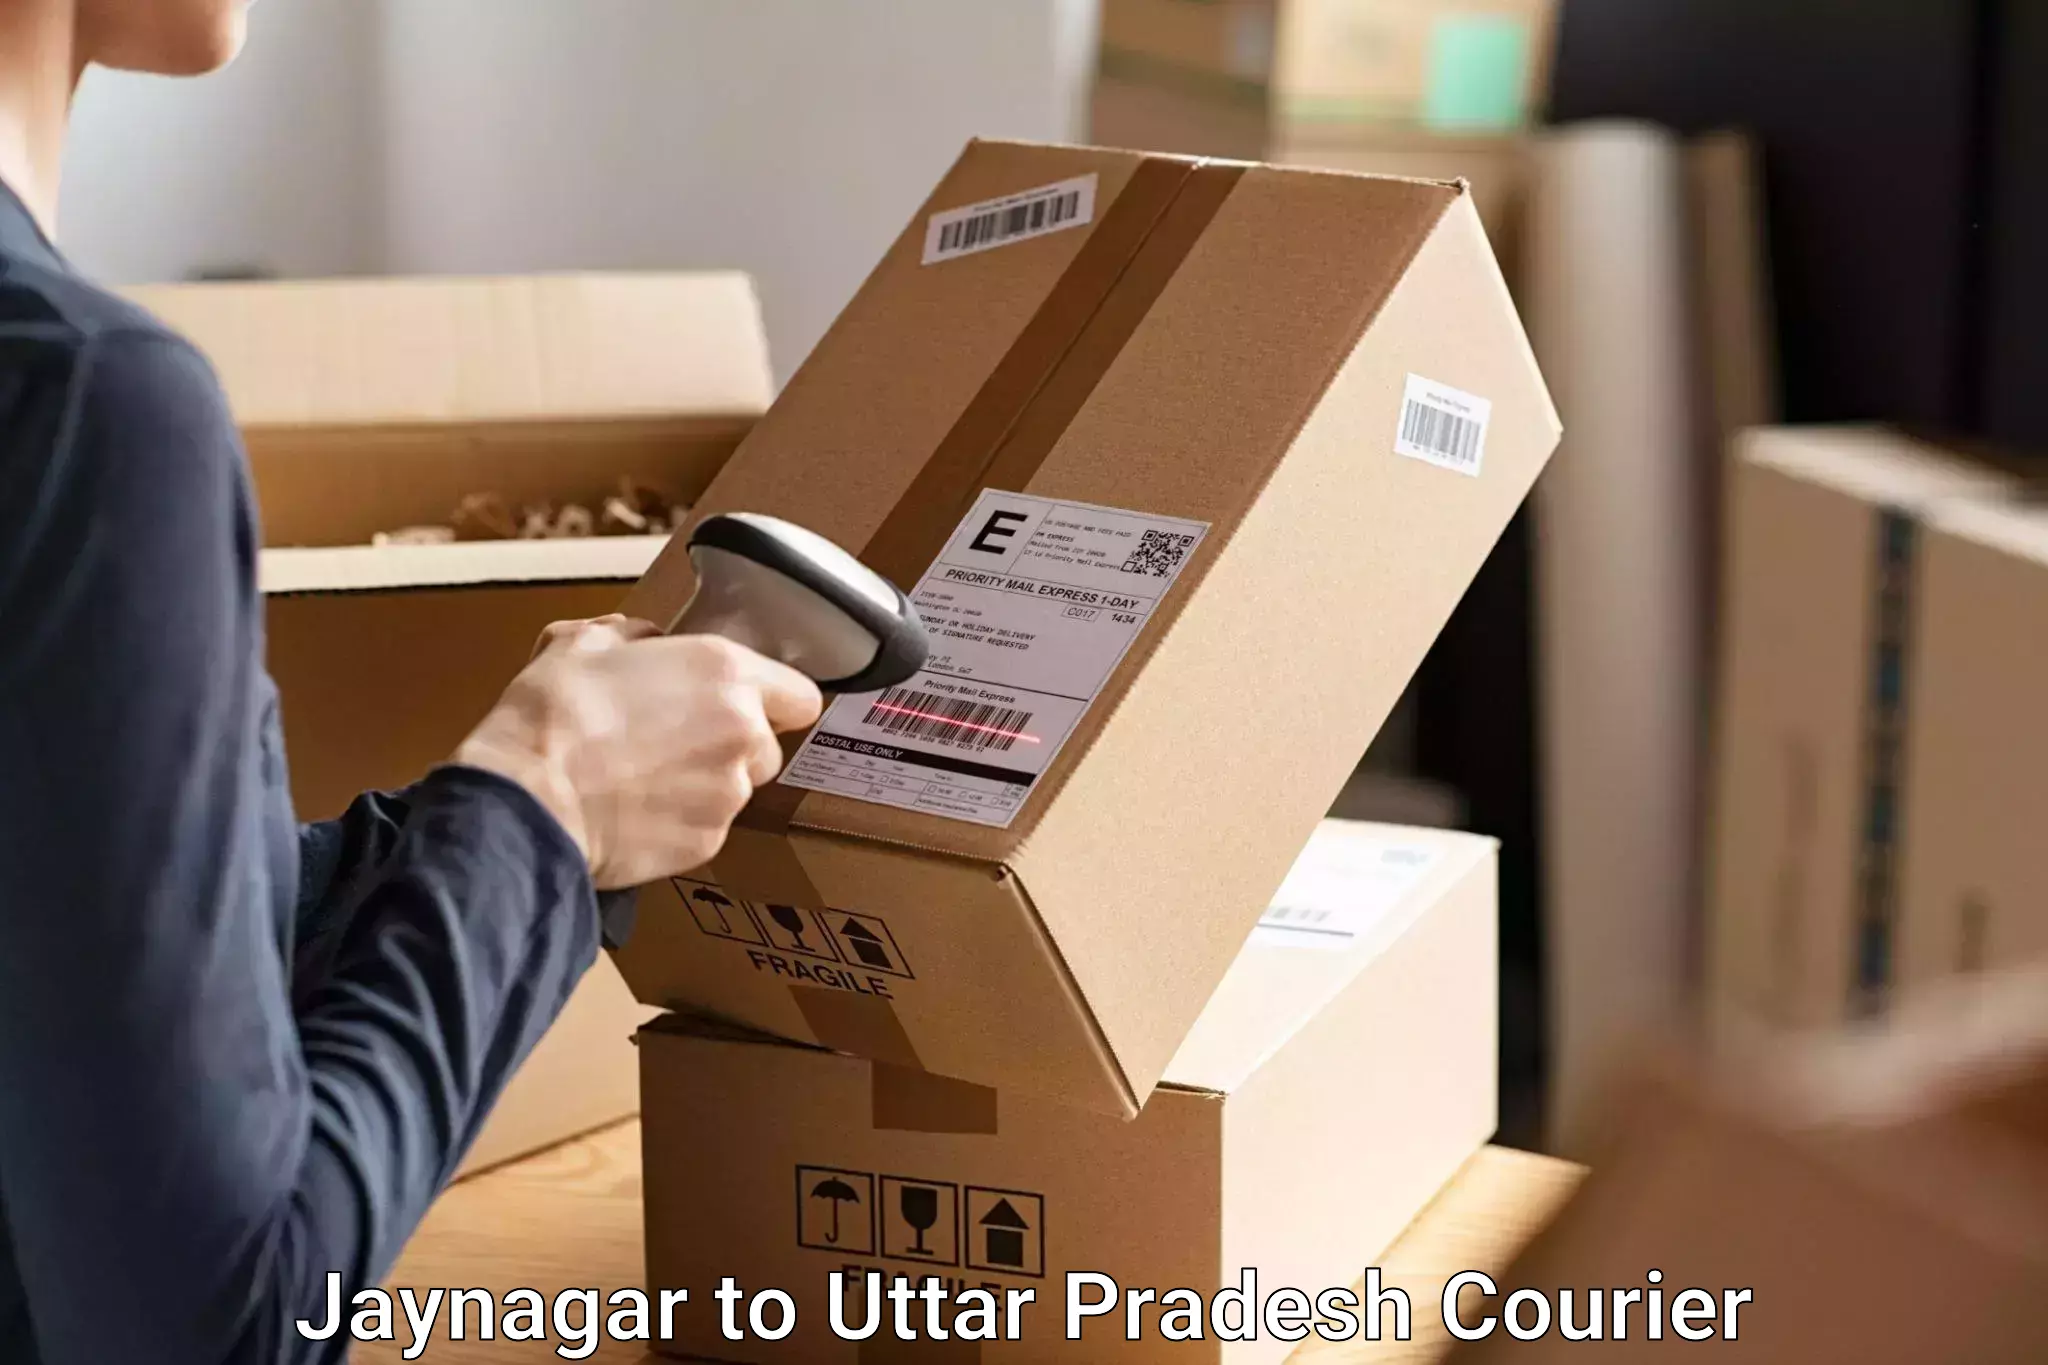 Baggage transport professionals Jaynagar to Kuru